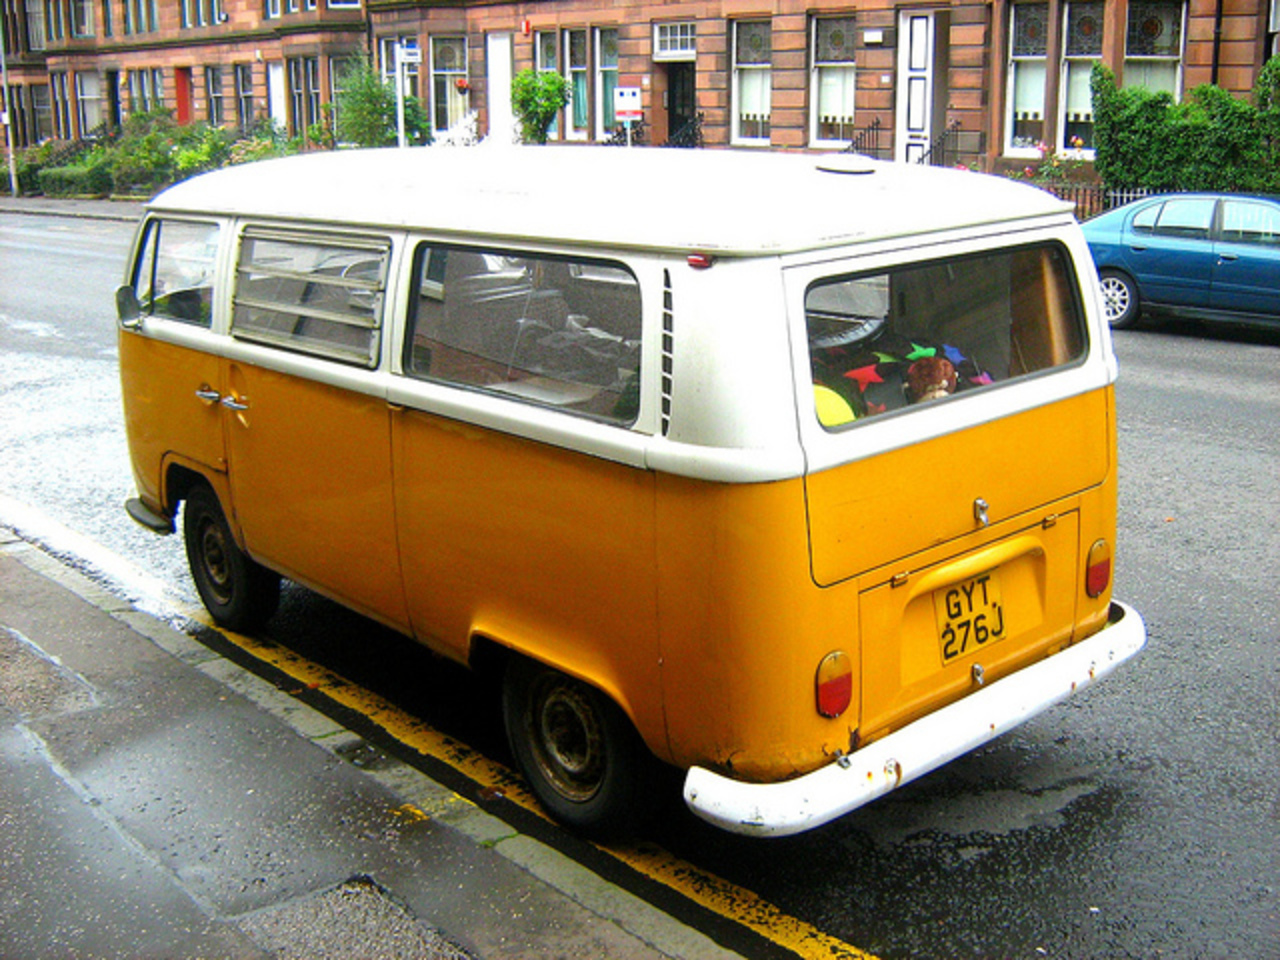 Volkswagen Camper Van, Kombi (Motor-Home) Type 1 - 1 of 3 | Flickr ...